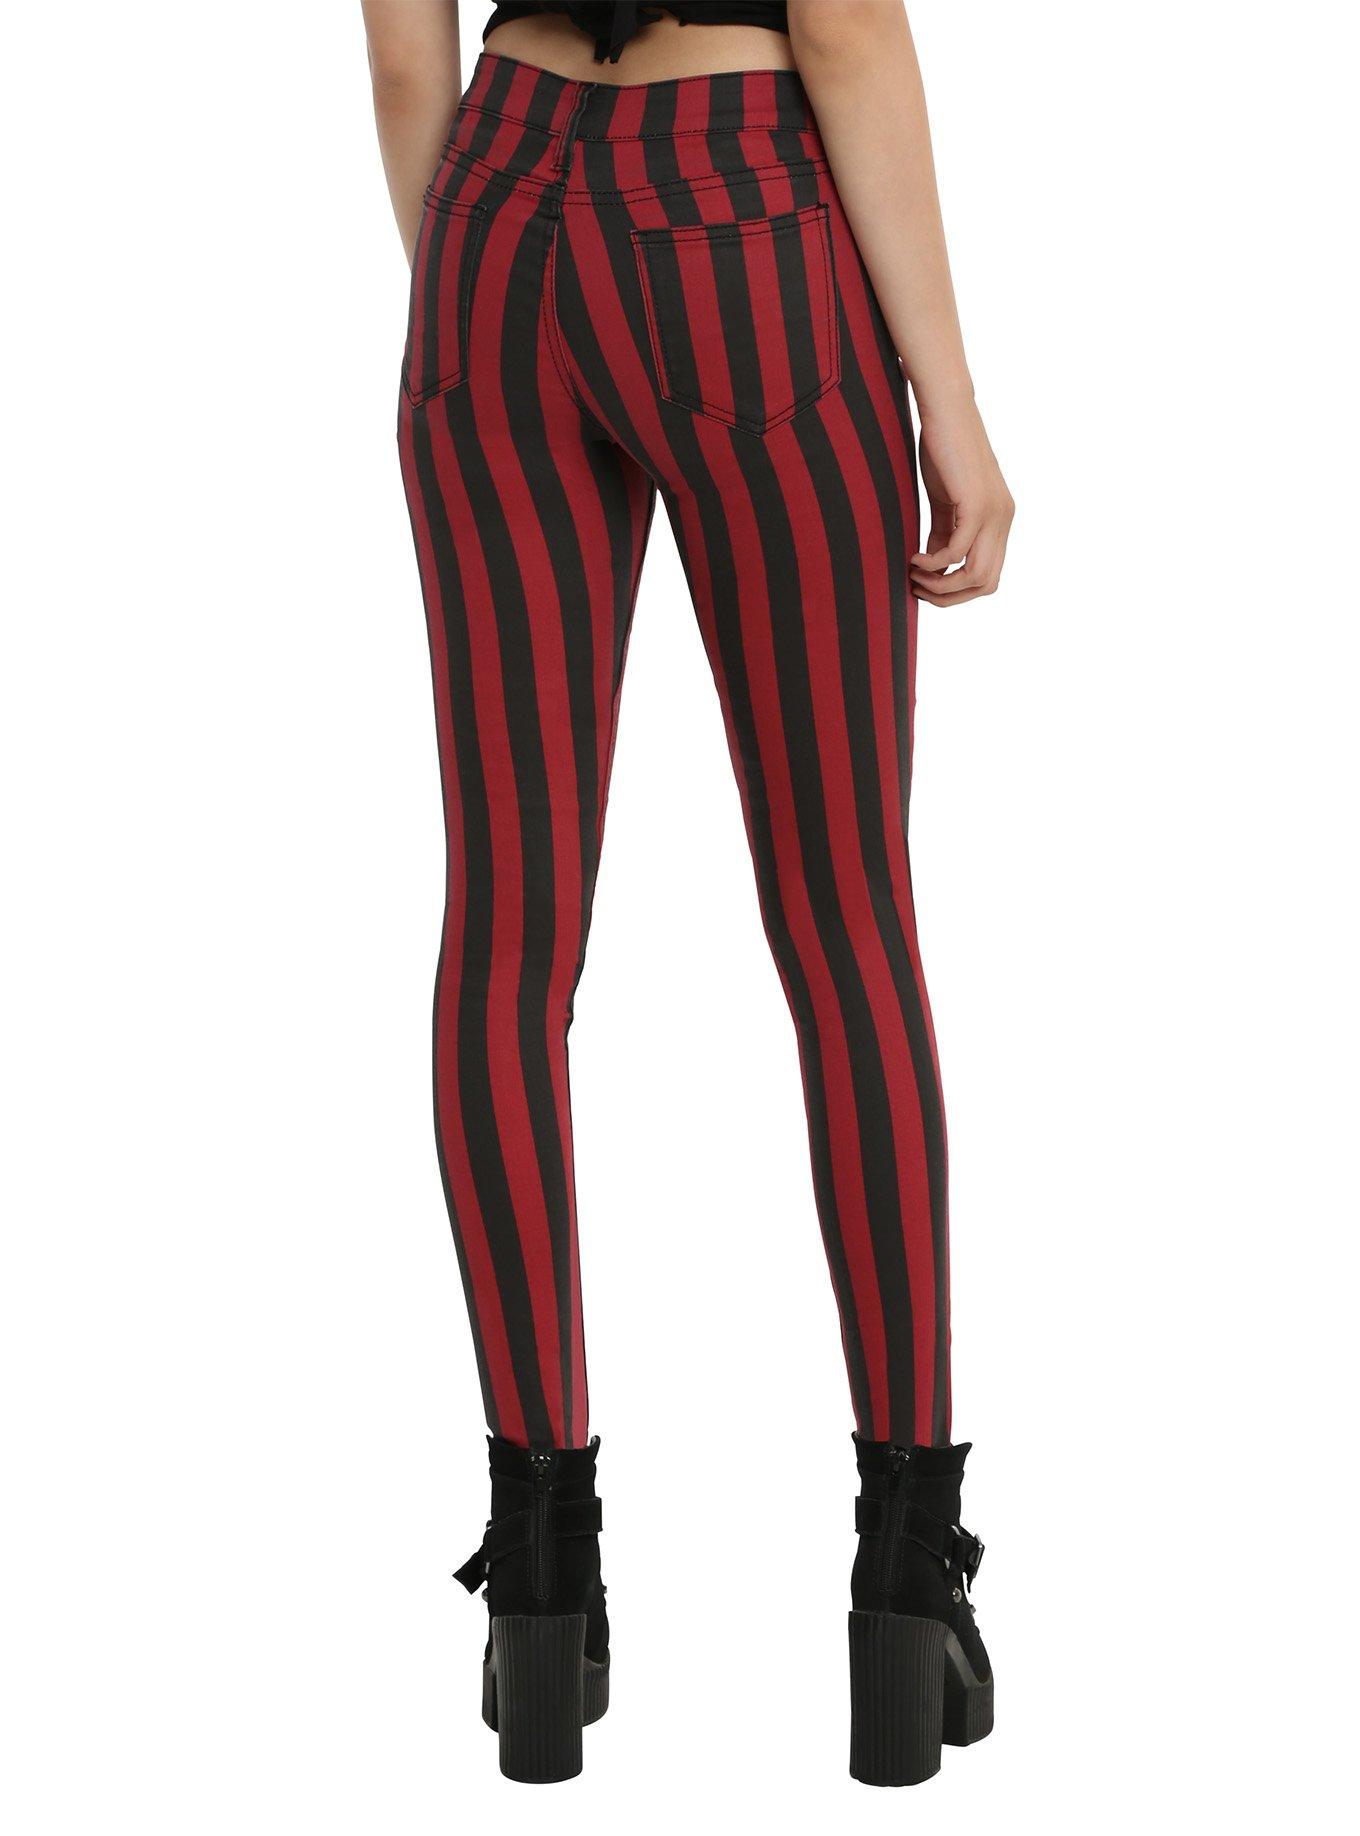 Blackheart Black & Red Stripe Zipper Stingerette Jeans, , alternate